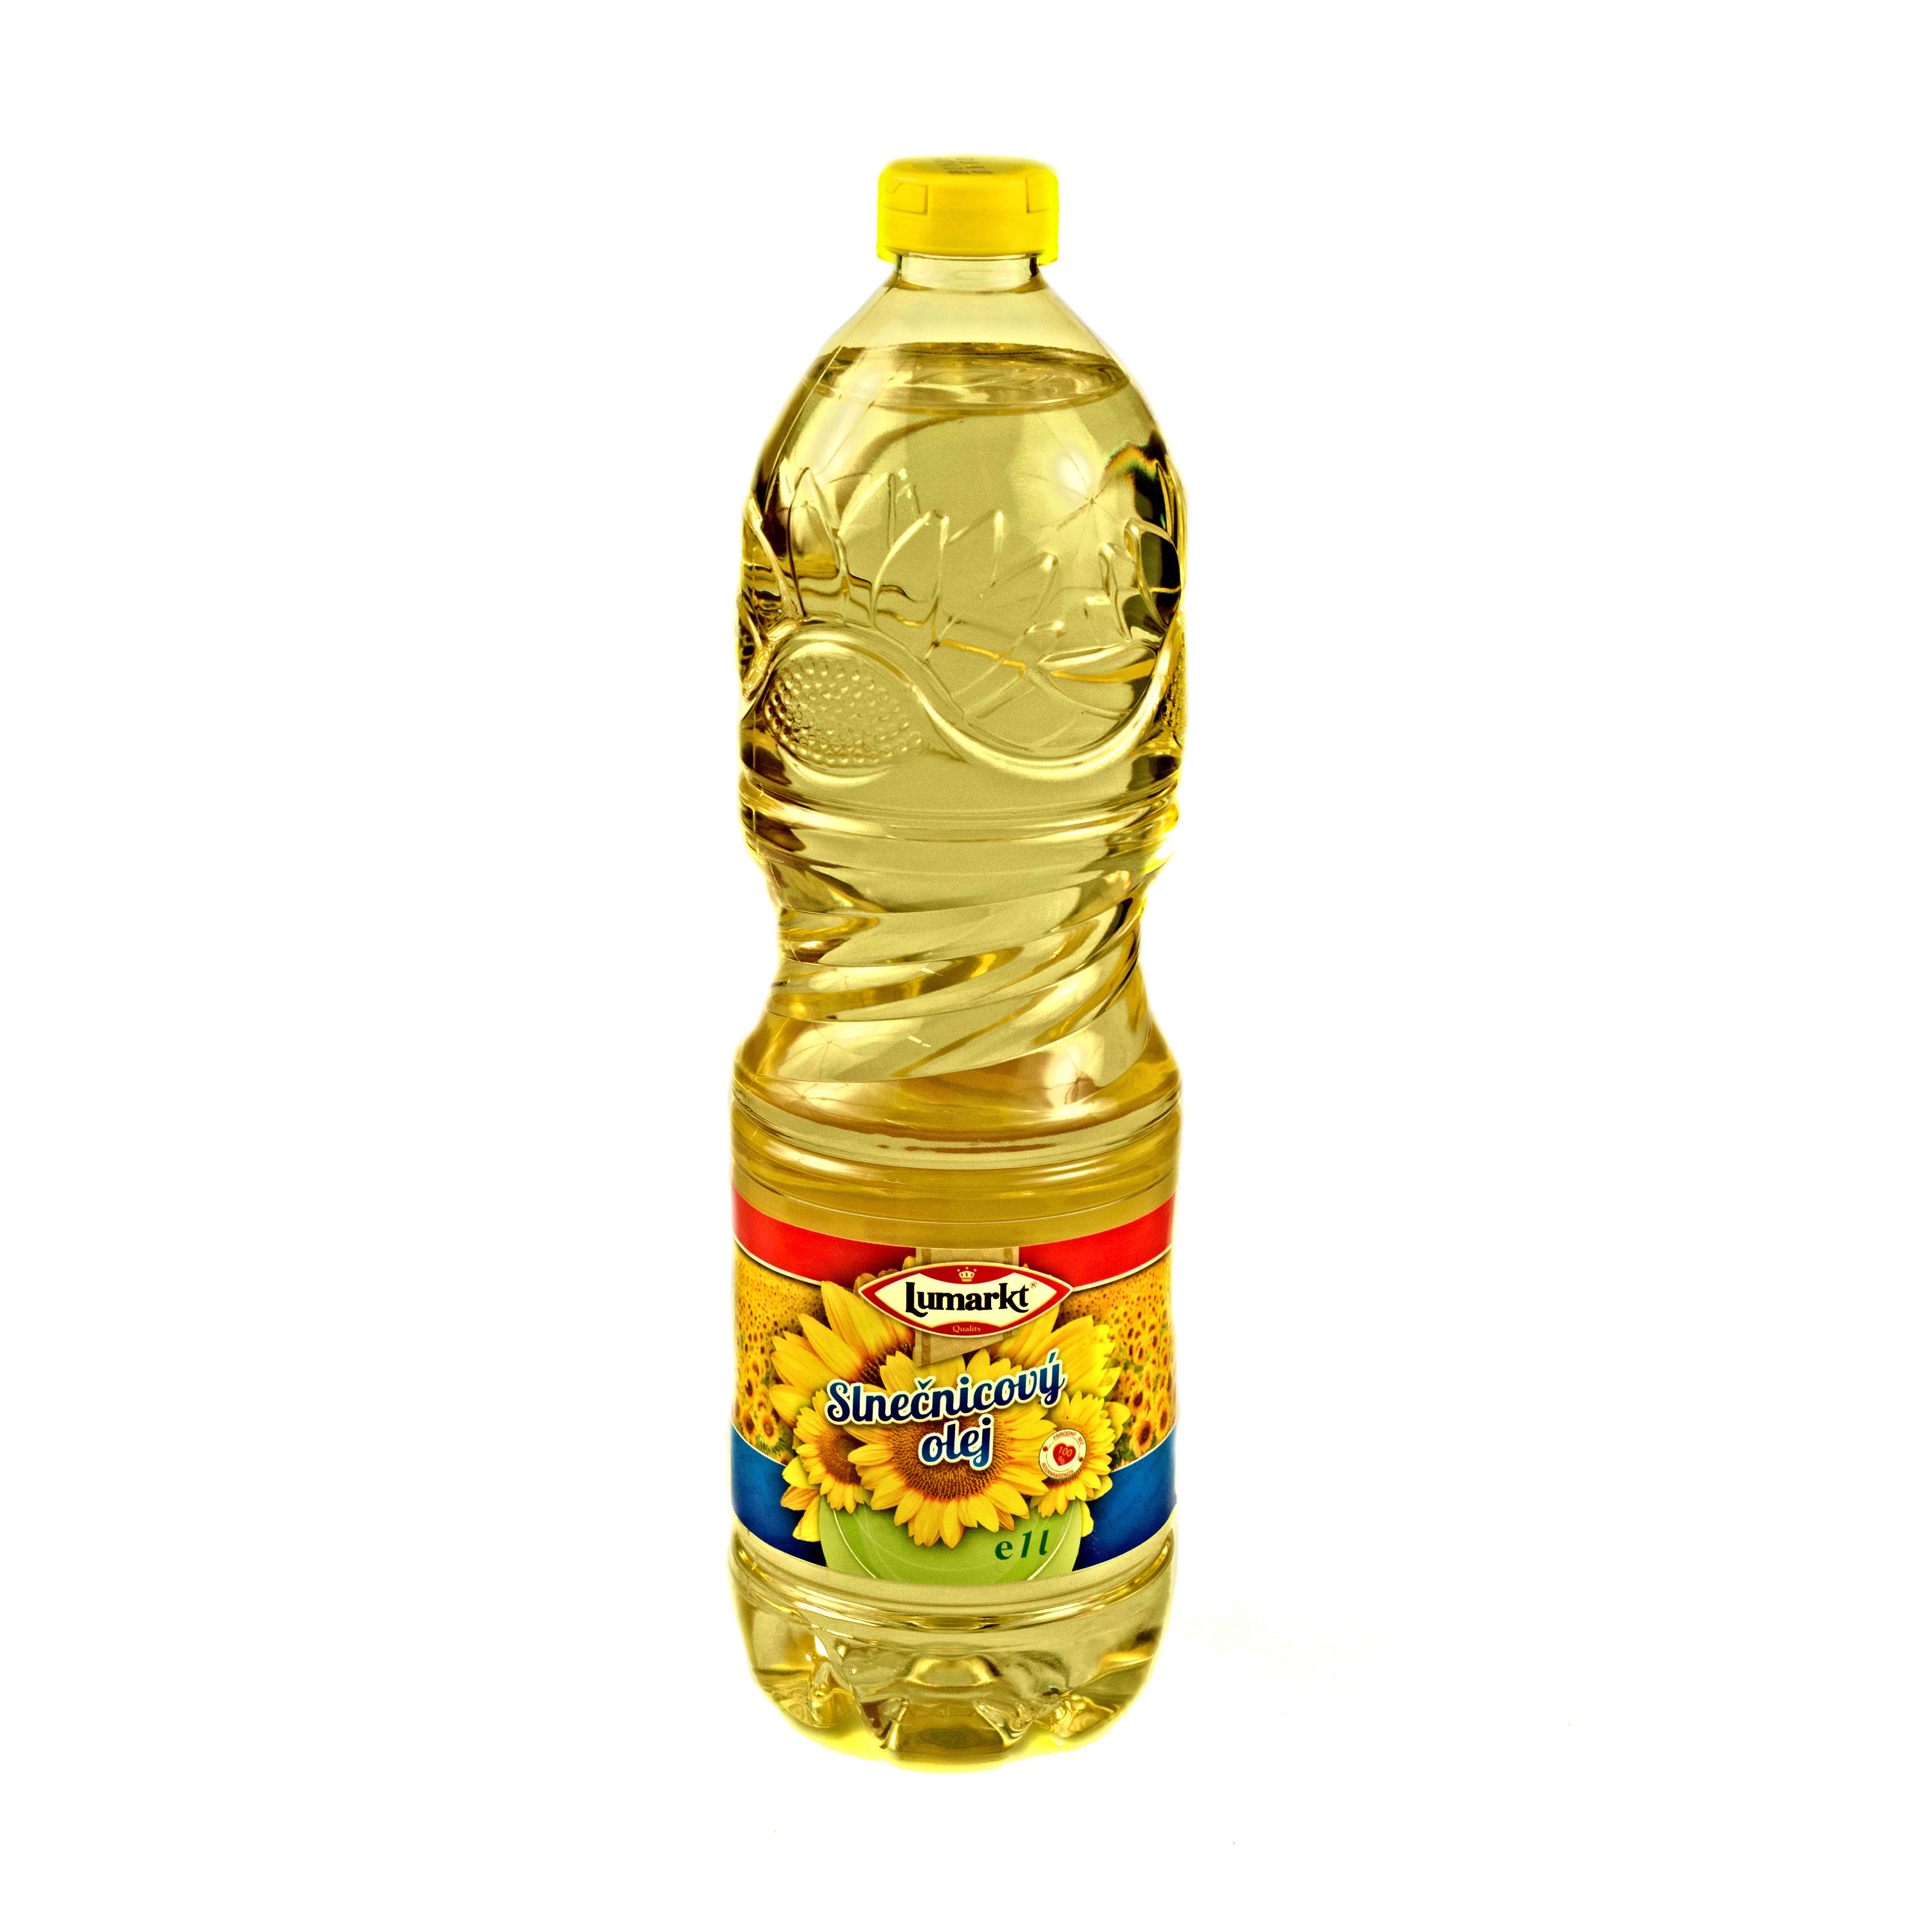 Slnečnicový olej - 100% (plast)